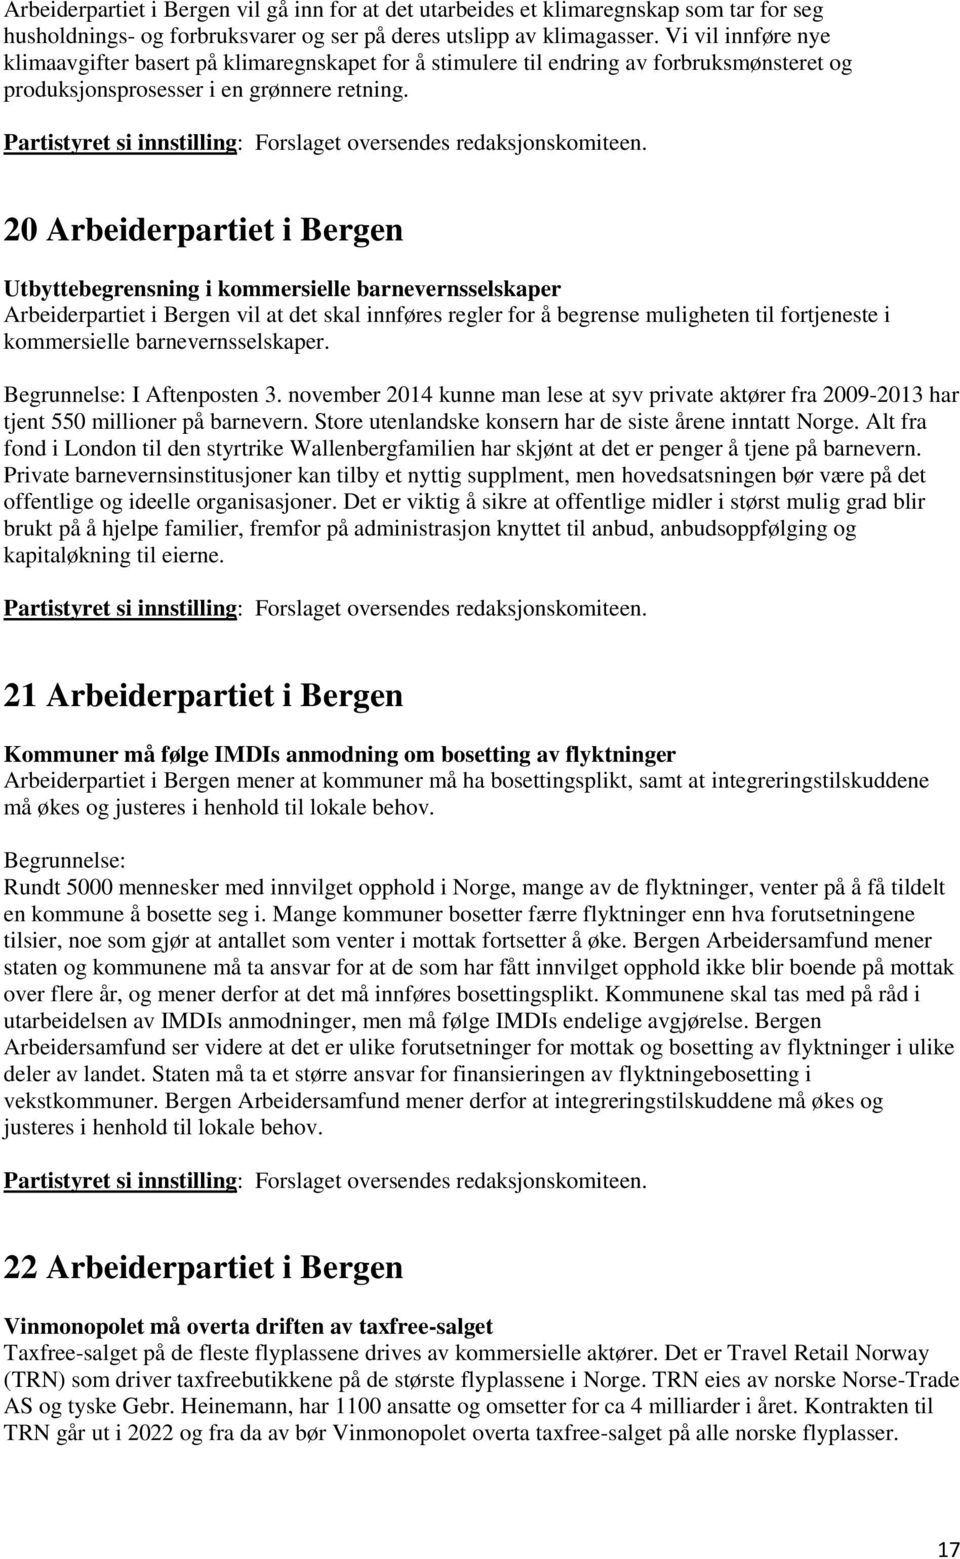 20 Arbeiderpartiet i Bergen Utbyttebegrensning i kommersielle barnevernsselskaper Arbeiderpartiet i Bergen vil at det skal innføres regler for å begrense muligheten til fortjeneste i kommersielle